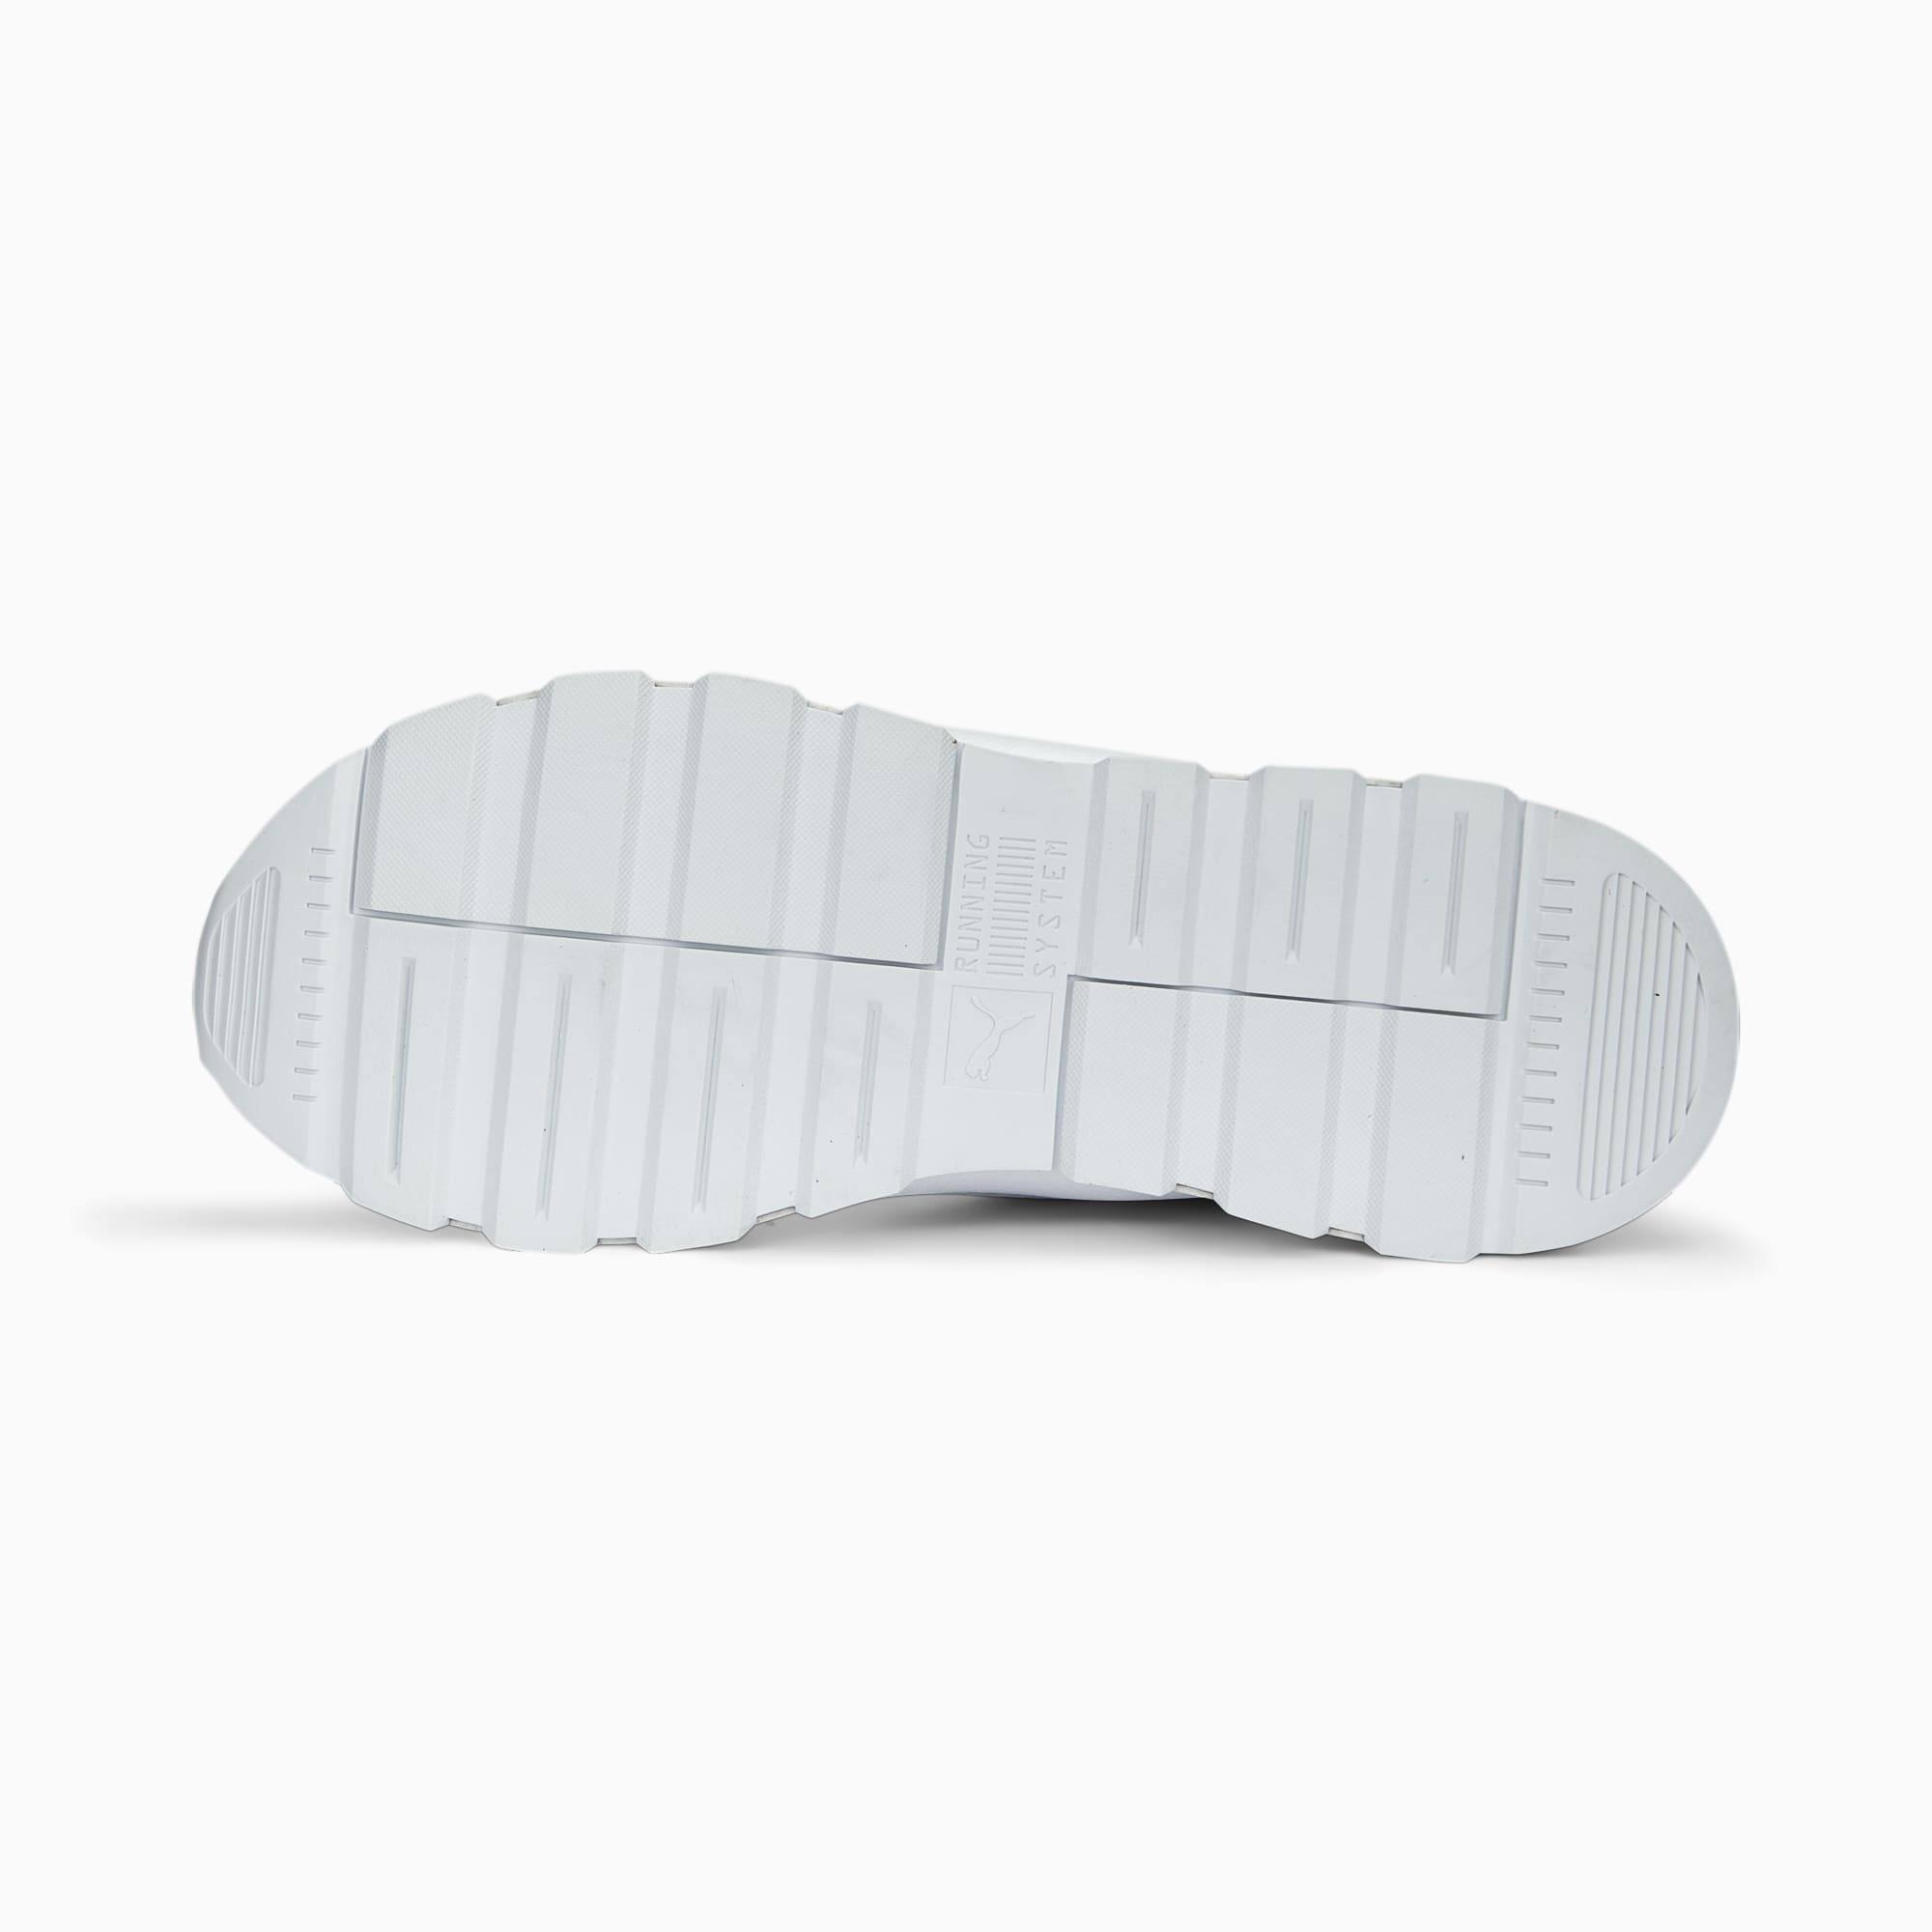 PUMA RS 3.0 Essentials Sneakers Schuhe, Weiß/Schwarz, Größe: 36, Schuhe